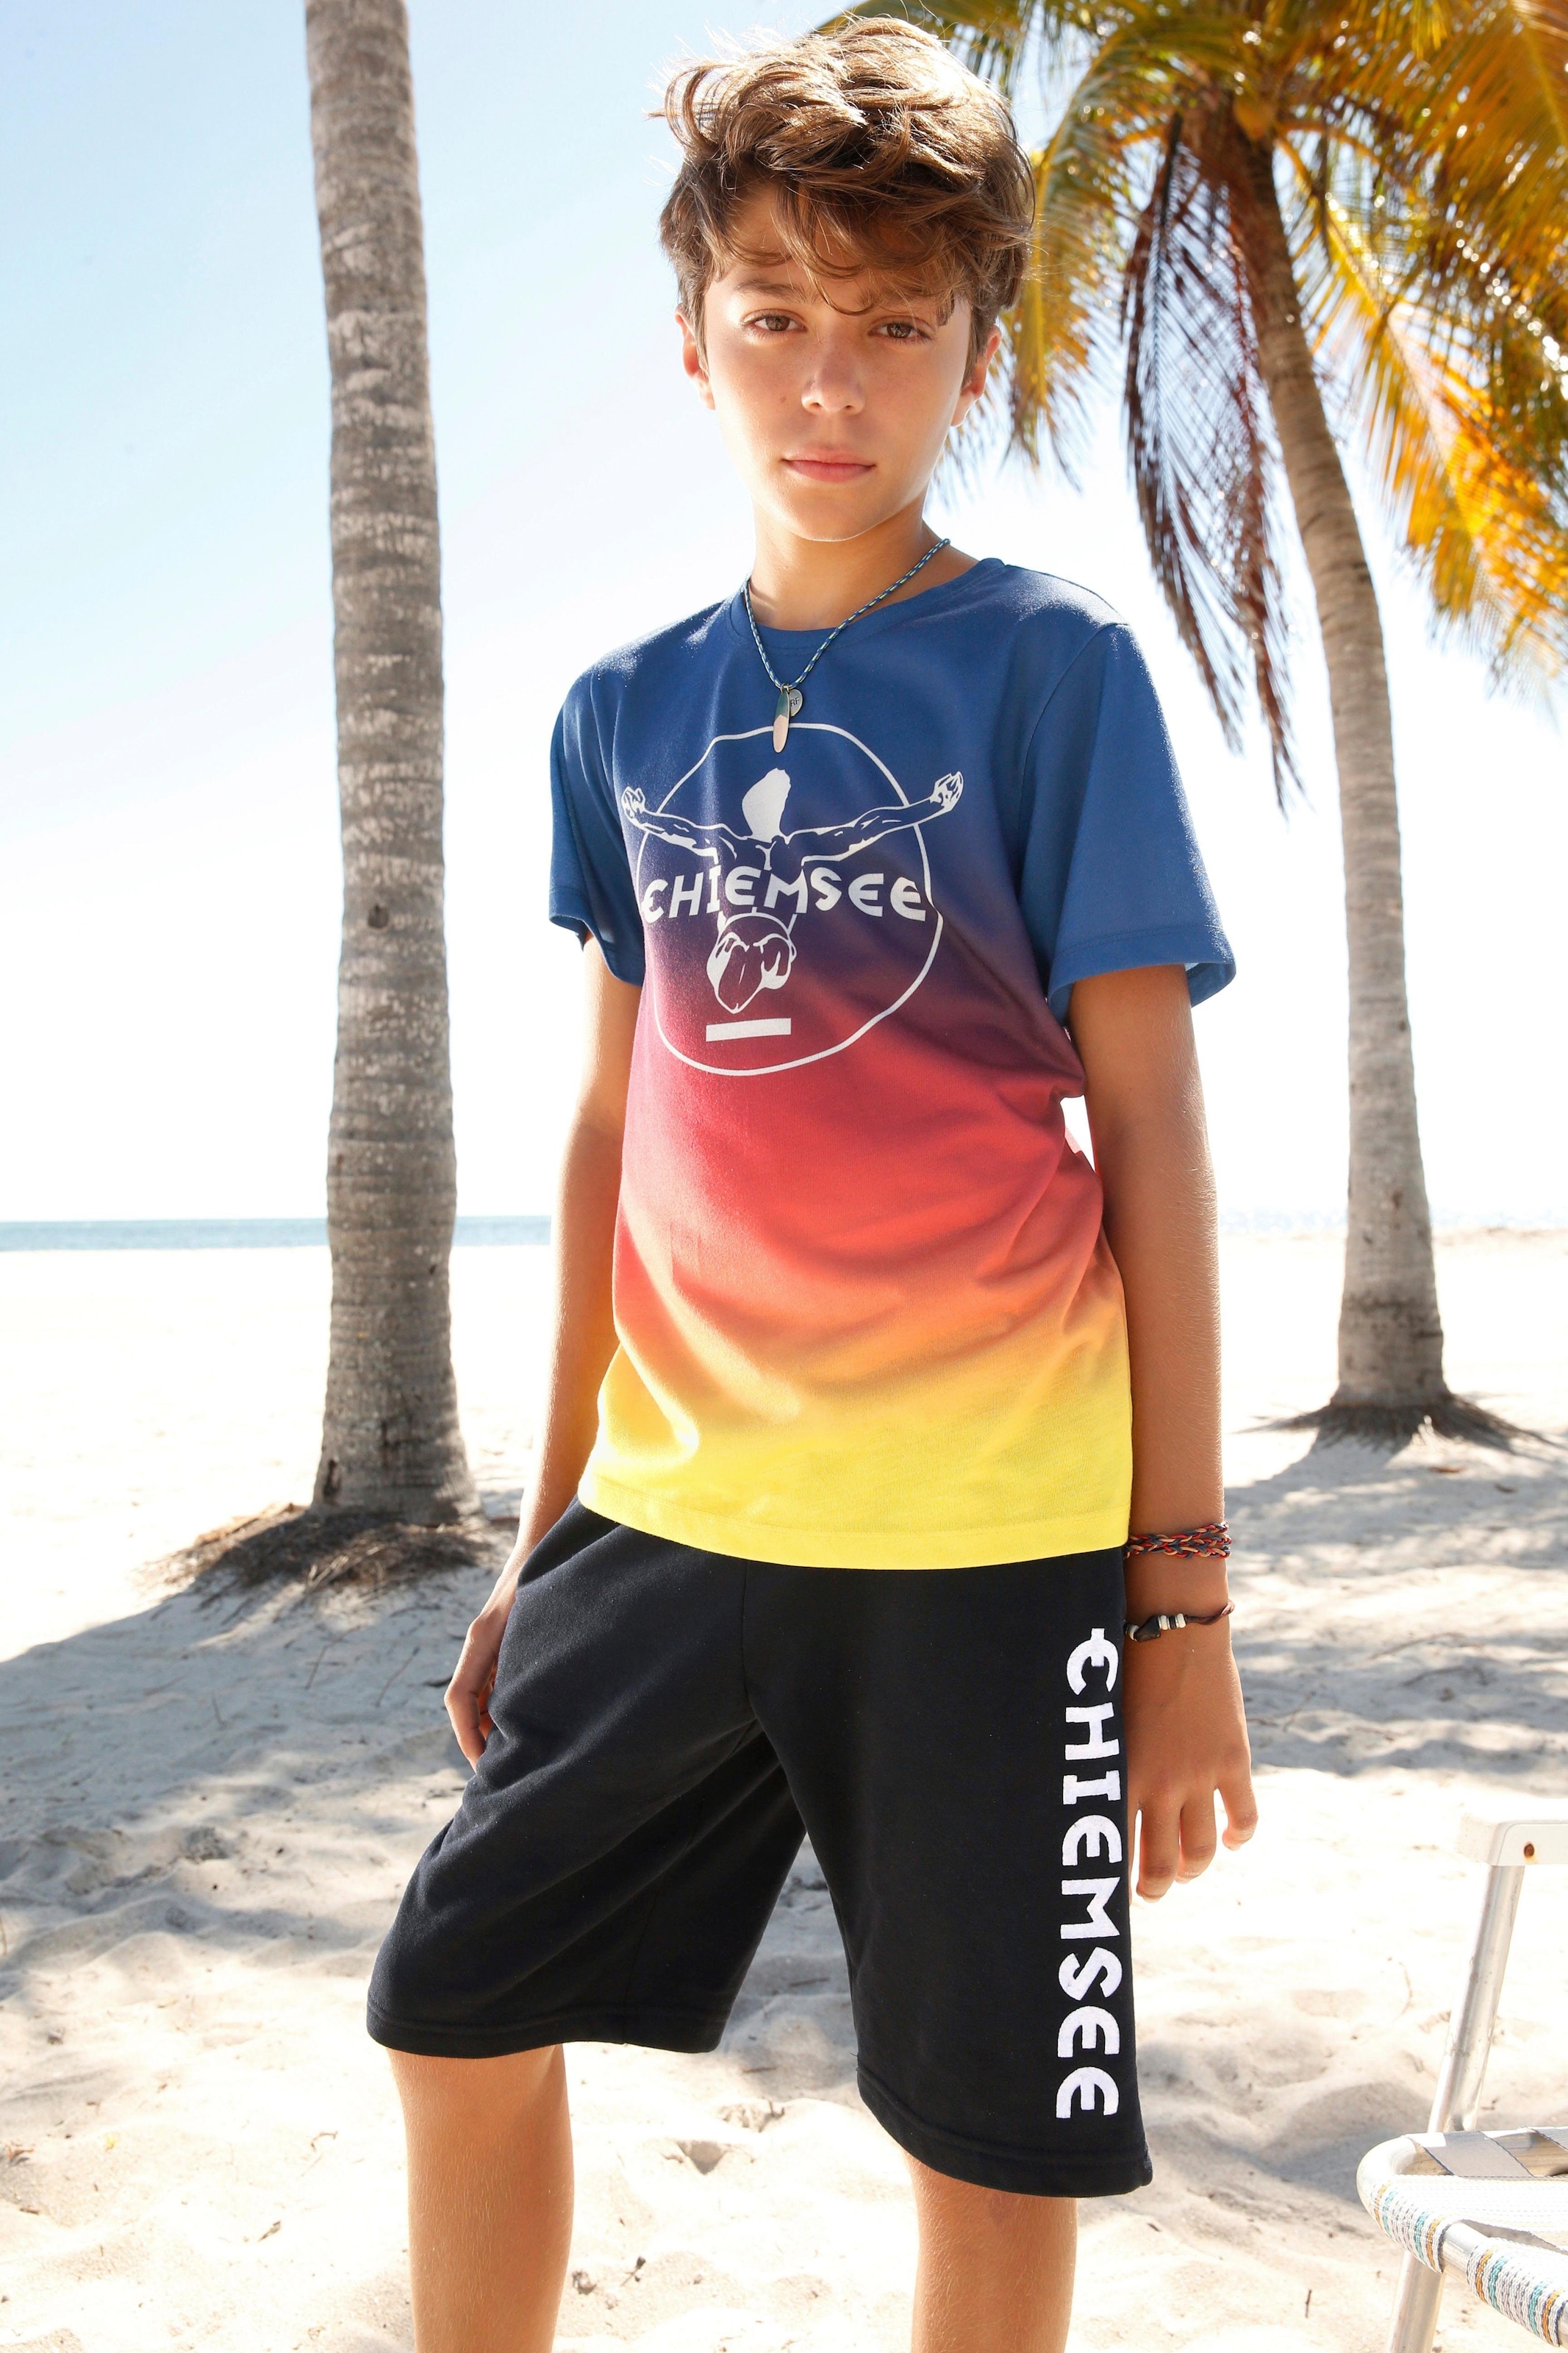 Druck vorn Chiemsee mit im T-Shirt, Farbverlauf